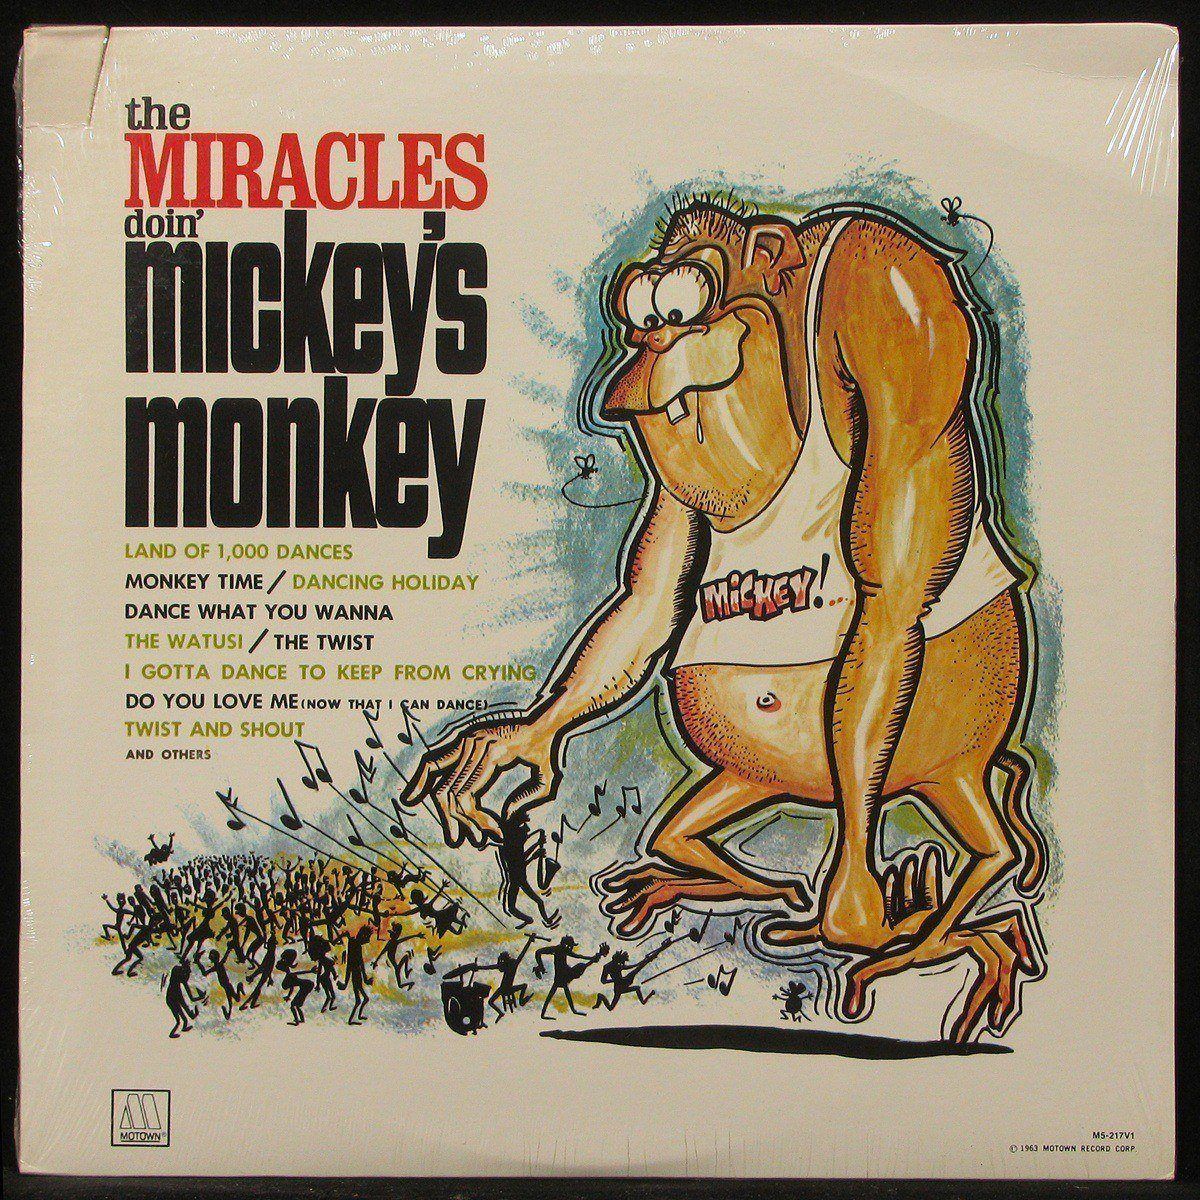 Doin' Mickey's Monkey